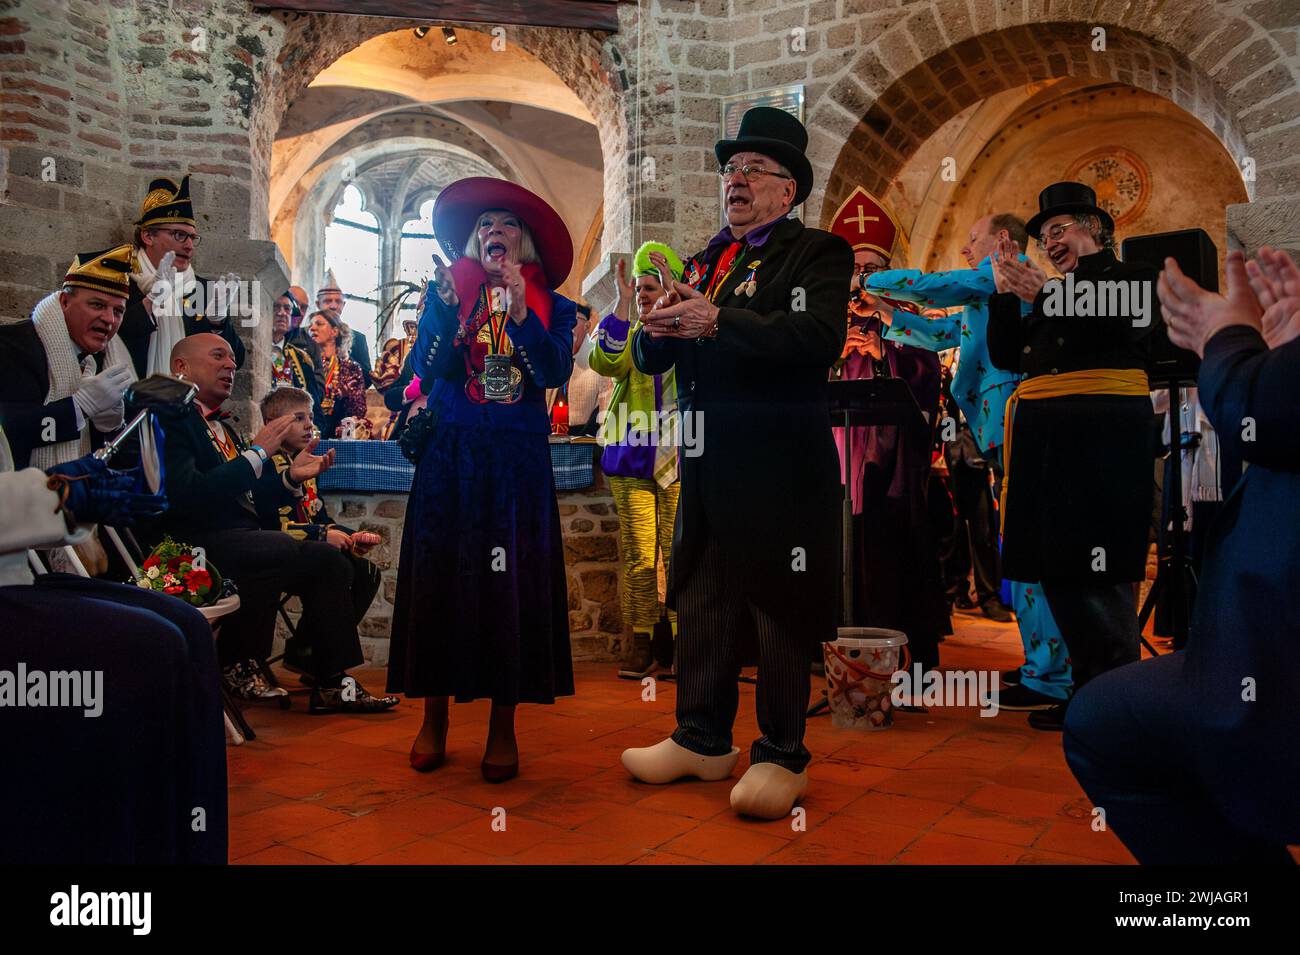 La coppia viene vista festeggiare dopo la cerimonia. Il matrimonio del contadino è una delle tradizioni del Carnevale olandese, specialmente nel Limburgo, nel Brabante settentrionale e nella Gheldria. La coppia si riunì nella cappella di Valkhof, indossando abiti tradizionali da contadino e circondato da persone che indossavano costumi vivaci. (Foto di Ana Fernandez / SOPA Images/Sipa USA) Foto Stock